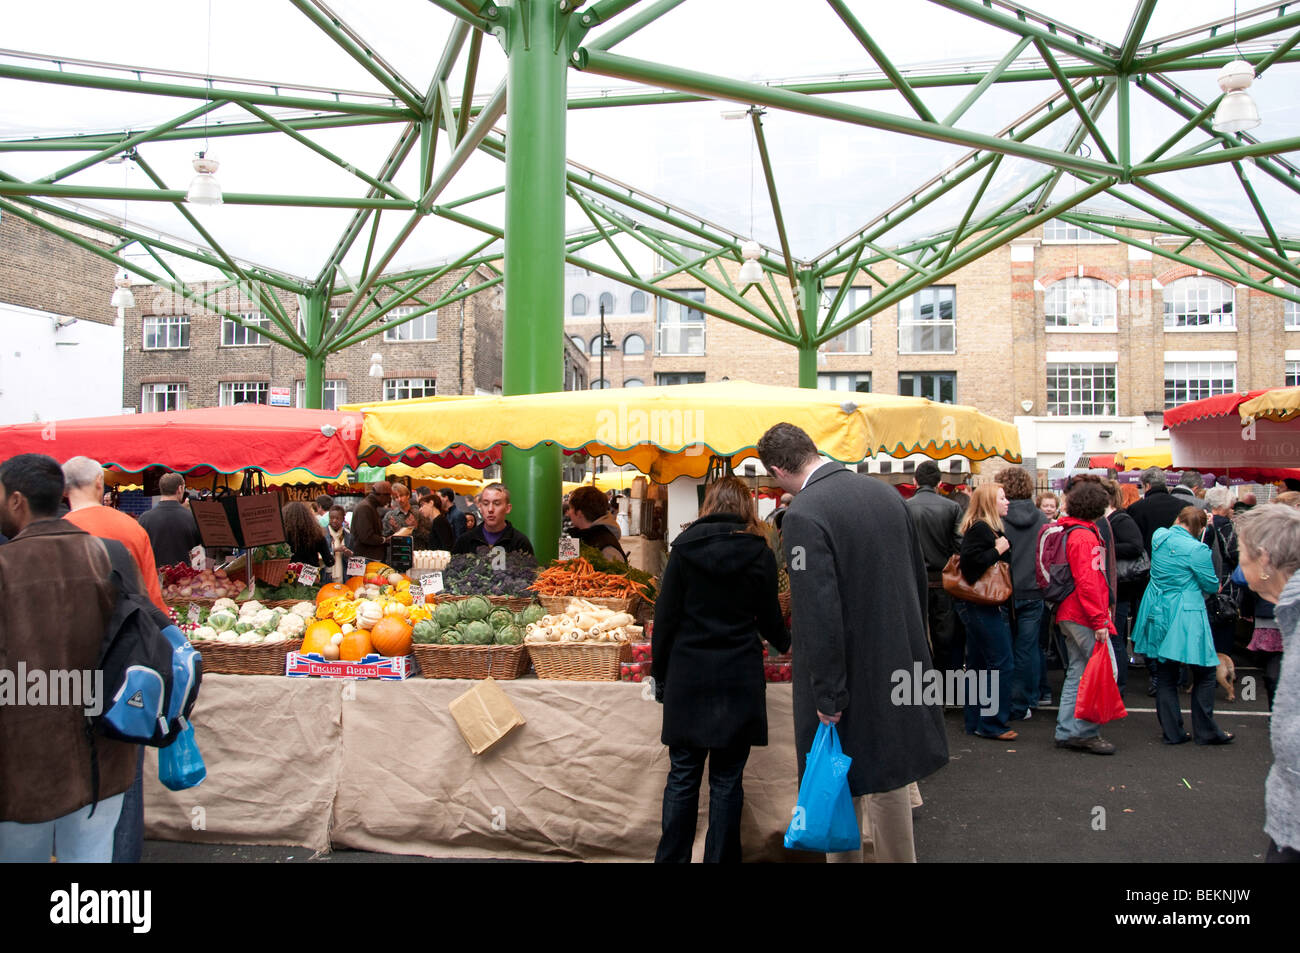 Borough Market, un marché alimentaire de gros et de détail à Southwark, au Sud Est de Londres, Angleterre. Banque D'Images